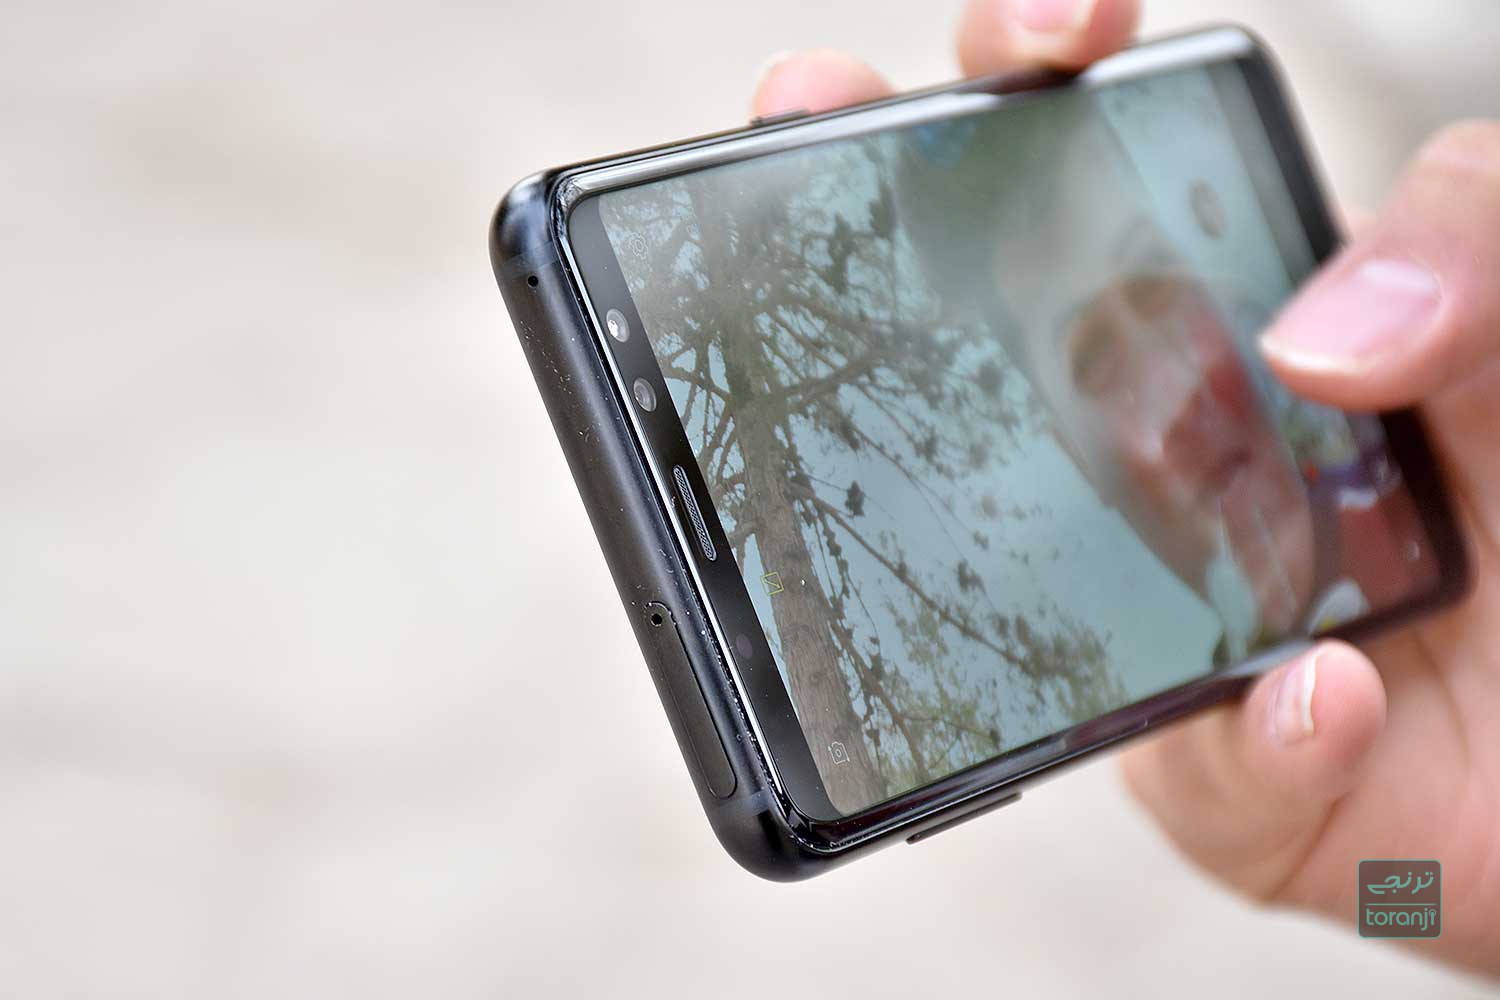 گلکسی ای 6 (Galaxy A6) با دوربین سلفی دوگانه، نمایشگر HD و باتری 3000 میلی آمپری عرضه خواهد شد